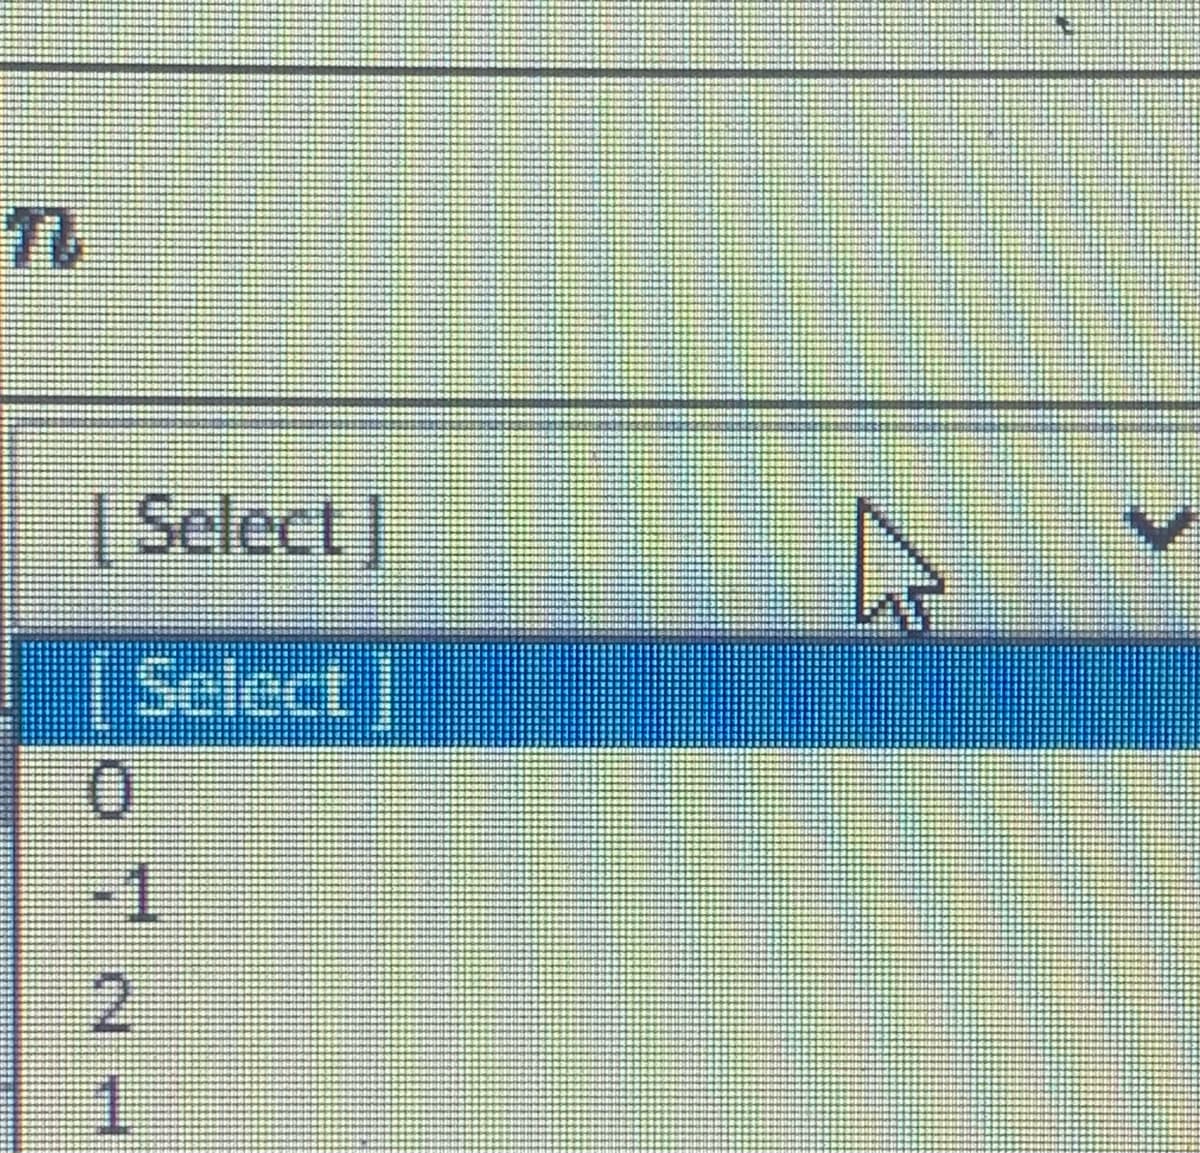 Select
Select]
-1
2
1.
